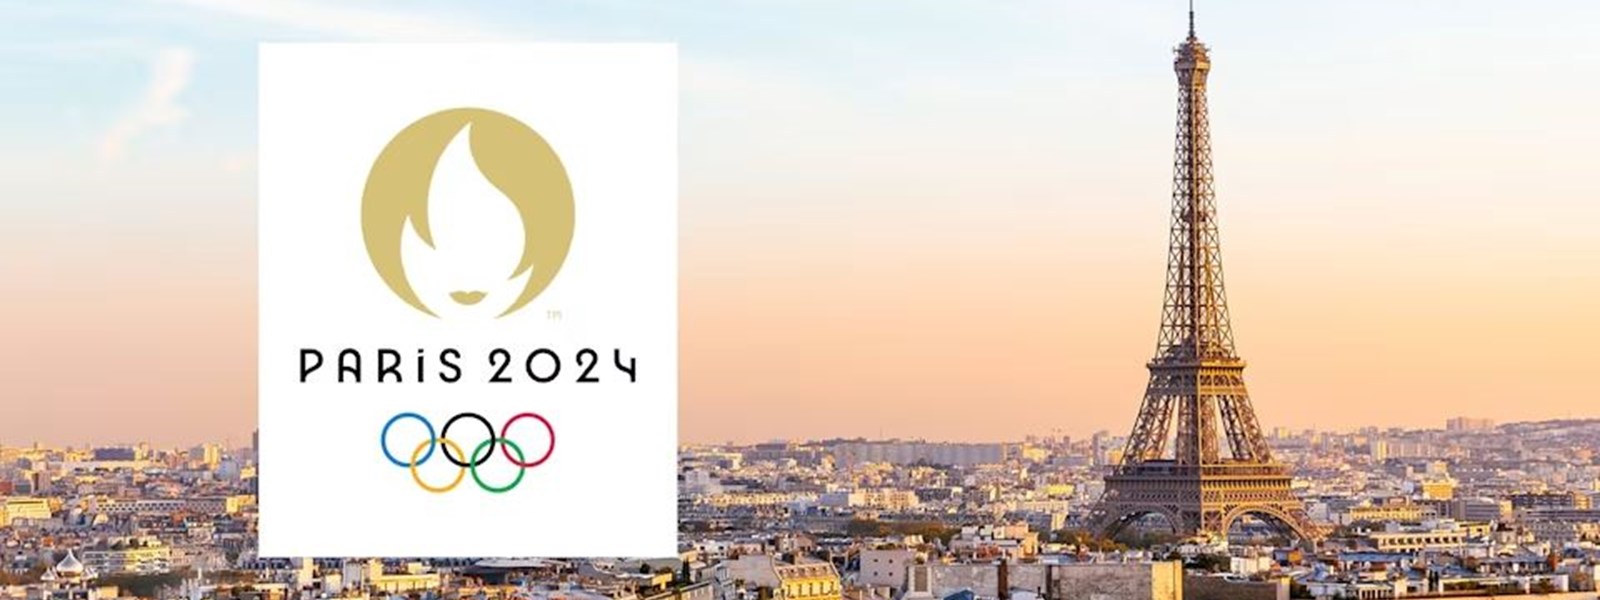 مشهدية عن أولمبياد باريس 2024 (موقع الأولمبياد) 